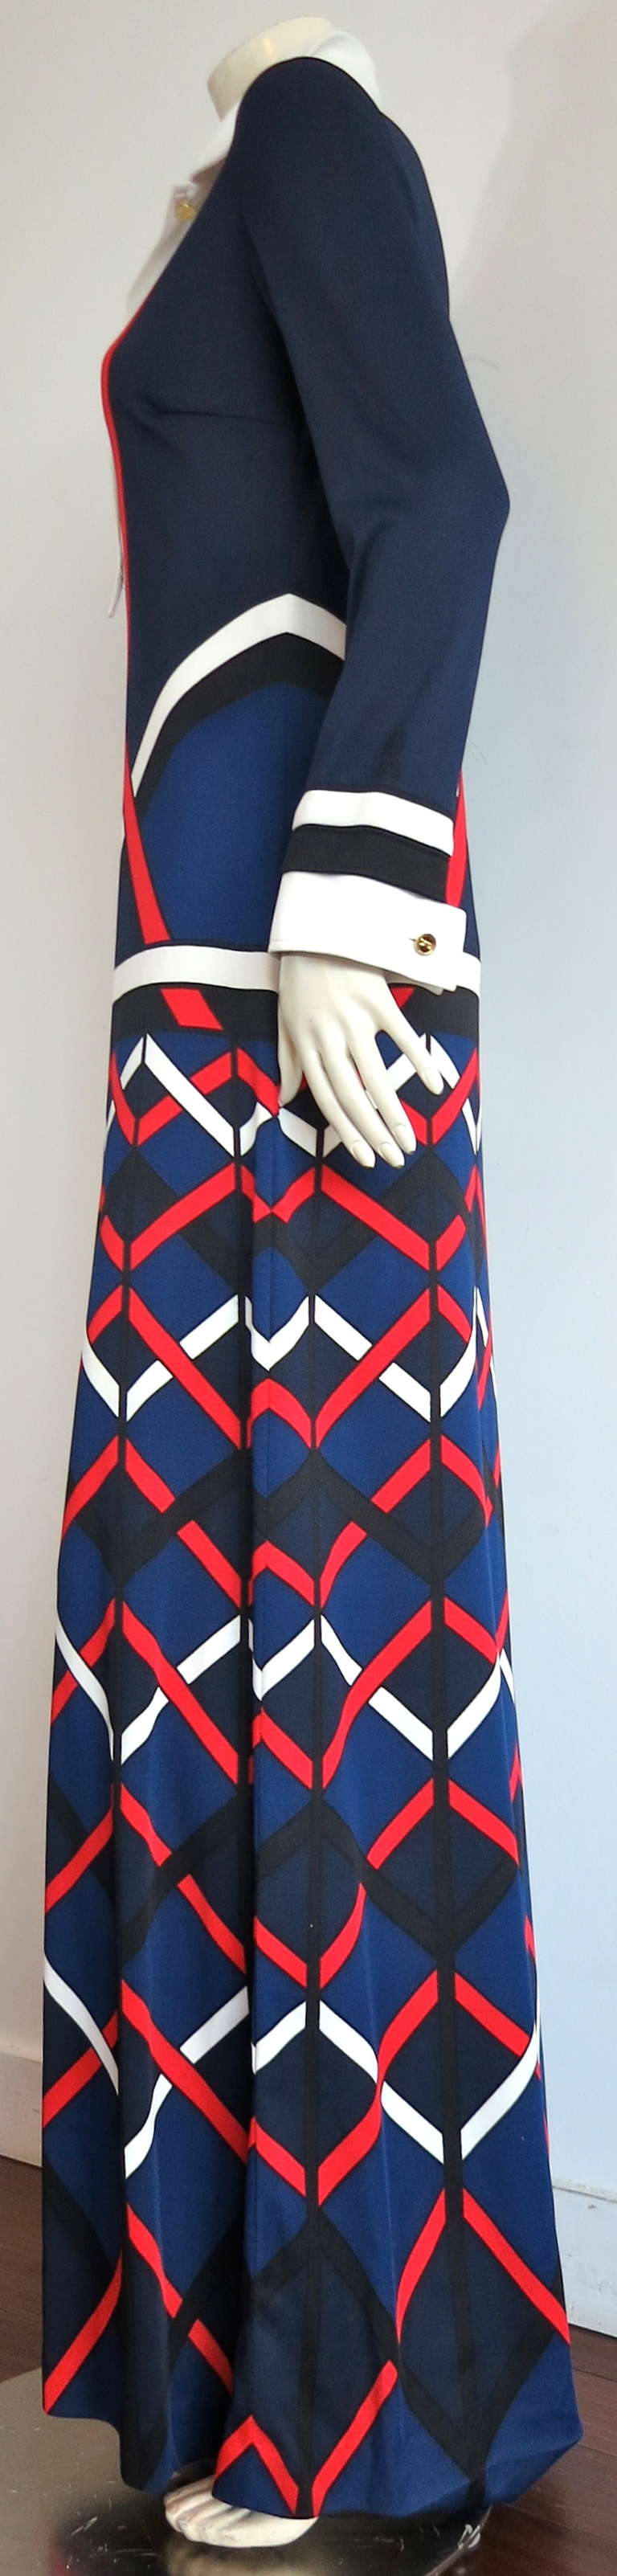 Vintage ROBERTA DI CAMERINO Trompe-l'œil knit dress 2